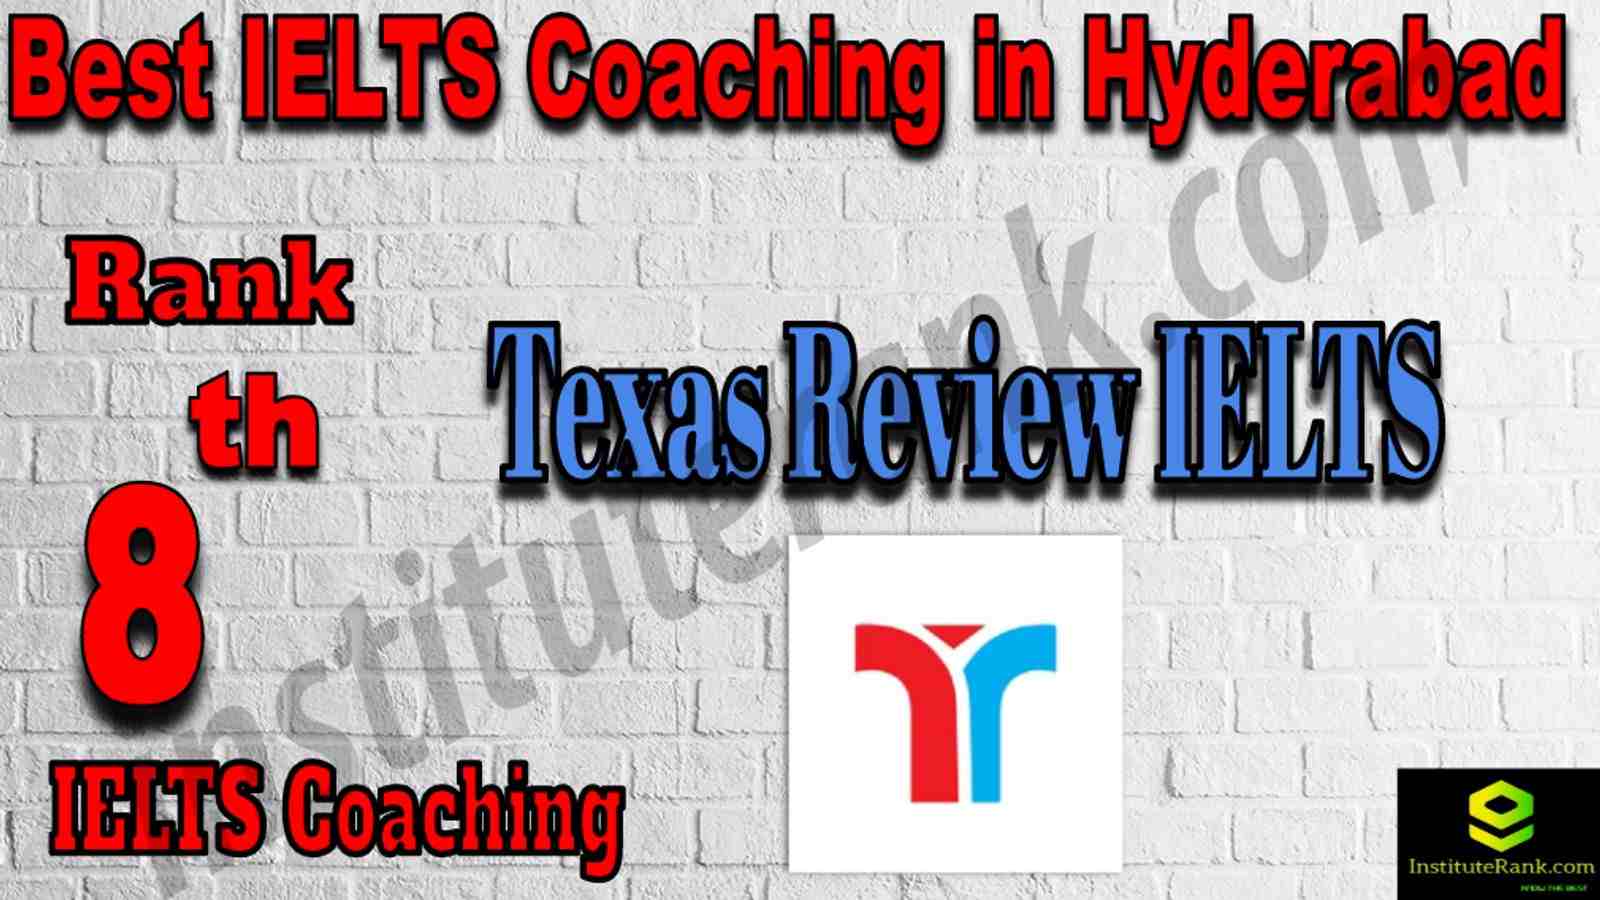 8th Best IELTS Coaching in Hyderabad